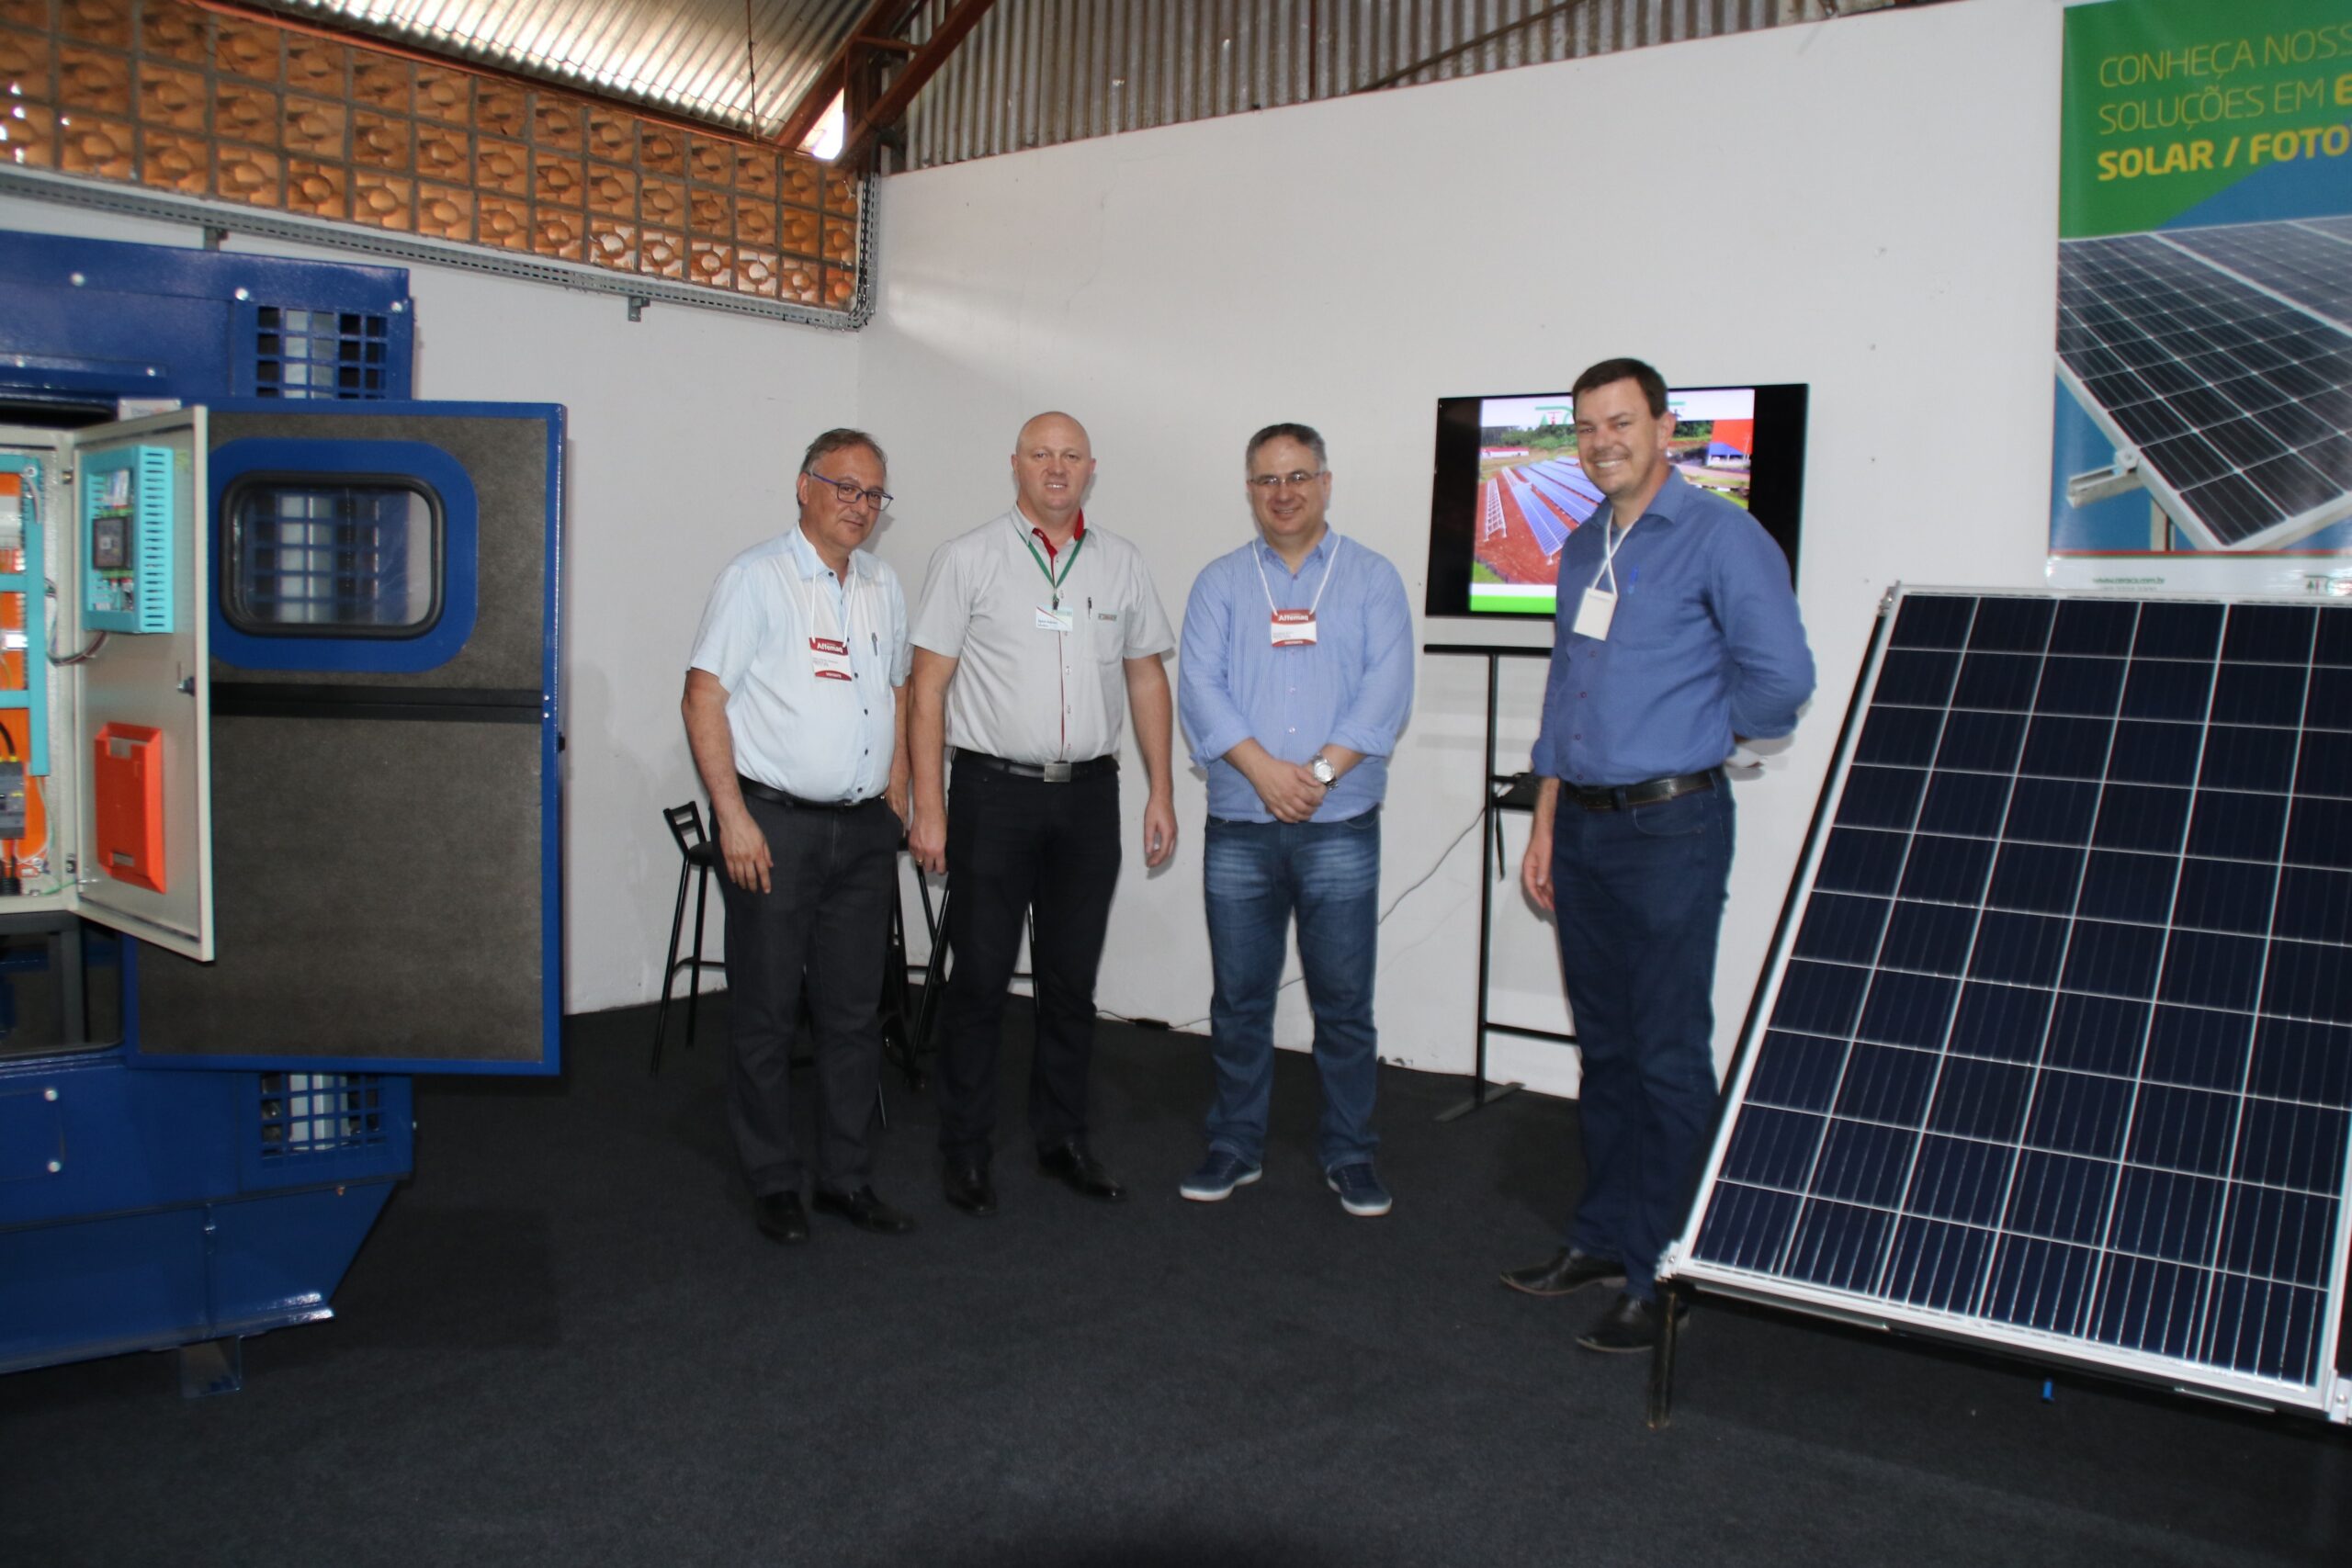 Prefeitos de Pinhalzinho e Saudades, Mario Afonso Woitexem (Cena) e Daniel Kothe, em visita ao stand da Ceraçá, que esteve expondo geradores e placas de energia fotovoltaica